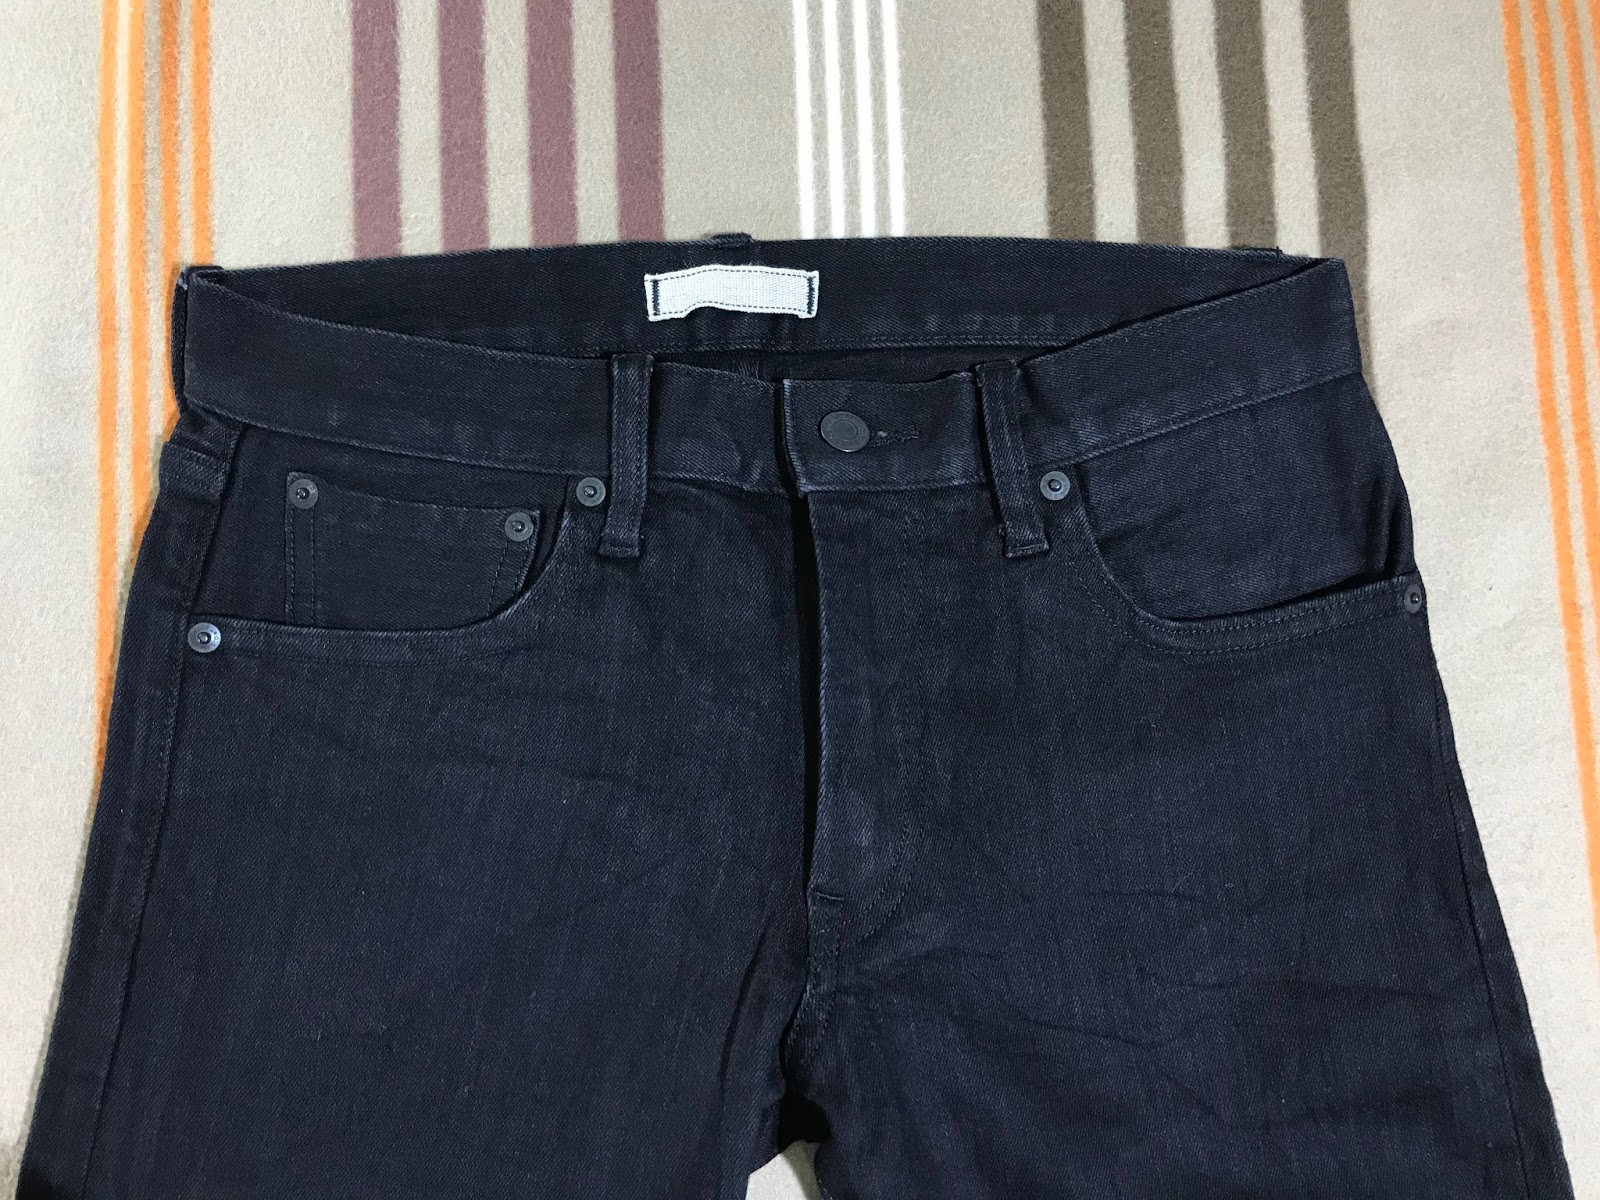 ho-B-bundle: Uniqlo jeans